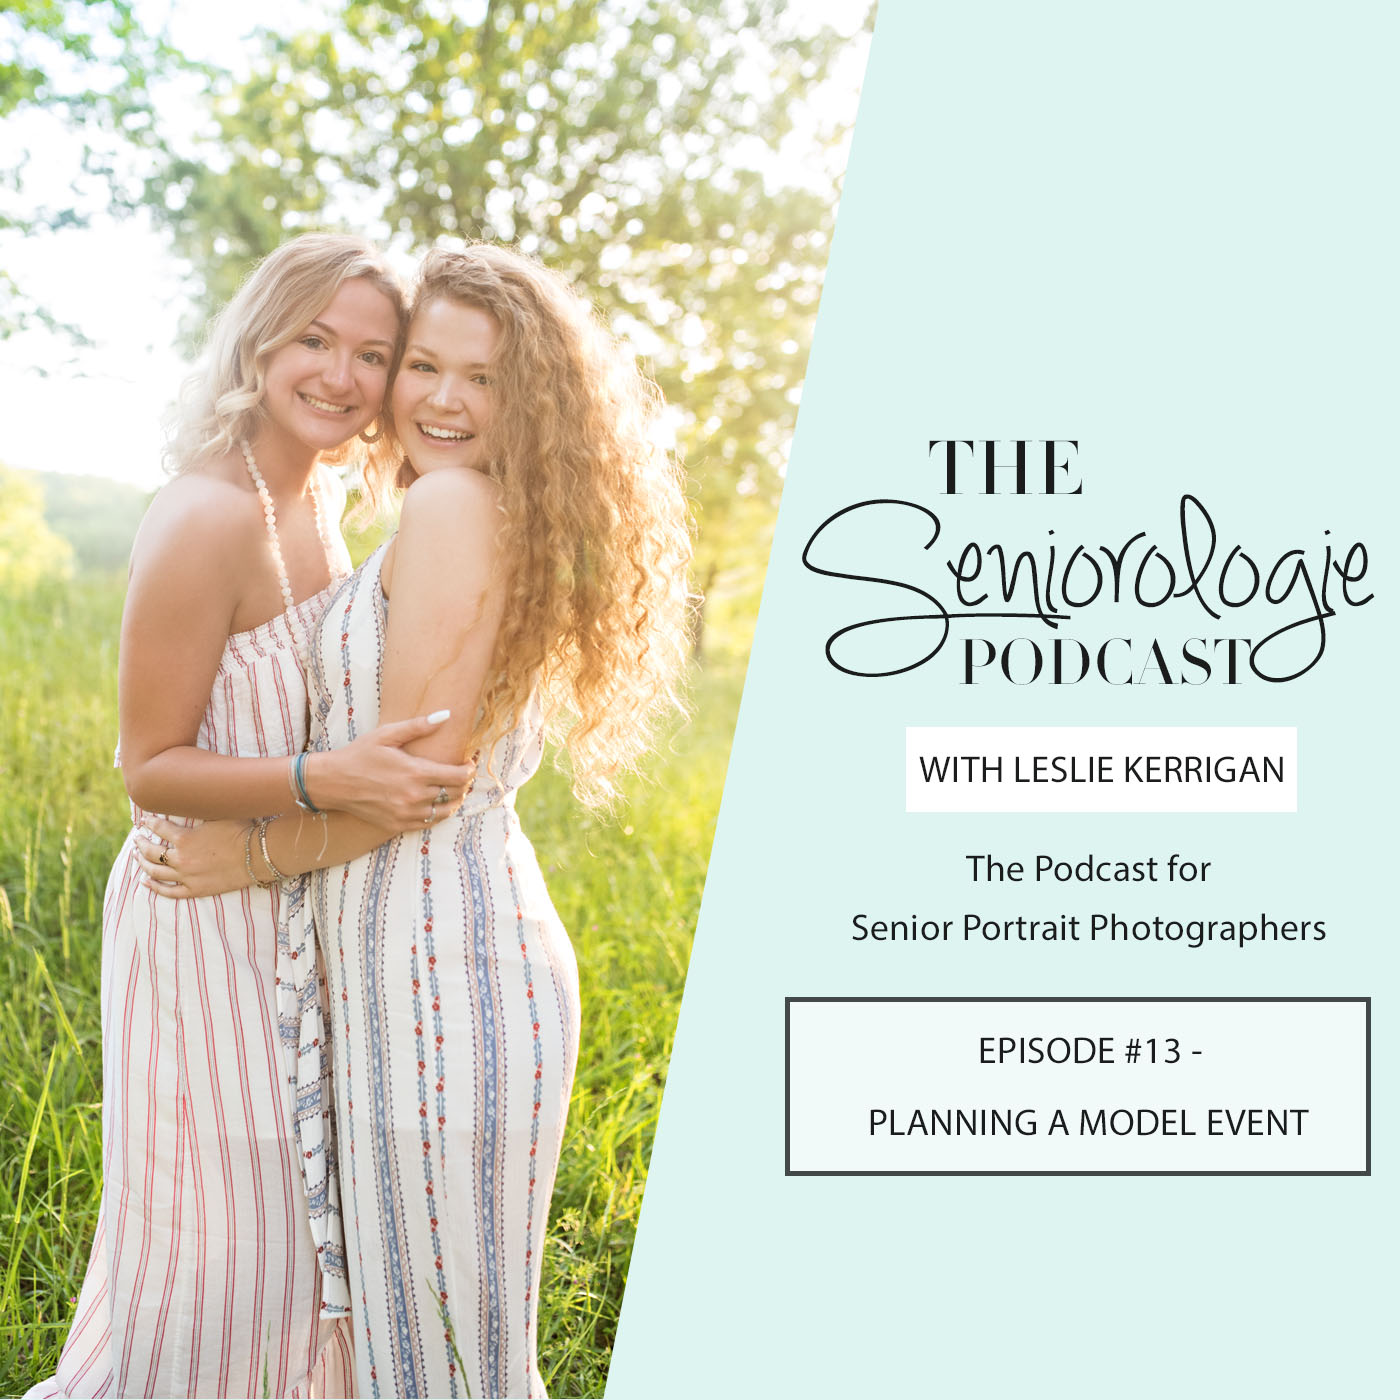 Tips for planning a model event for your senior spokesmodel team on Episode 13 of the Seniorologie podcast for senior portrait photographers